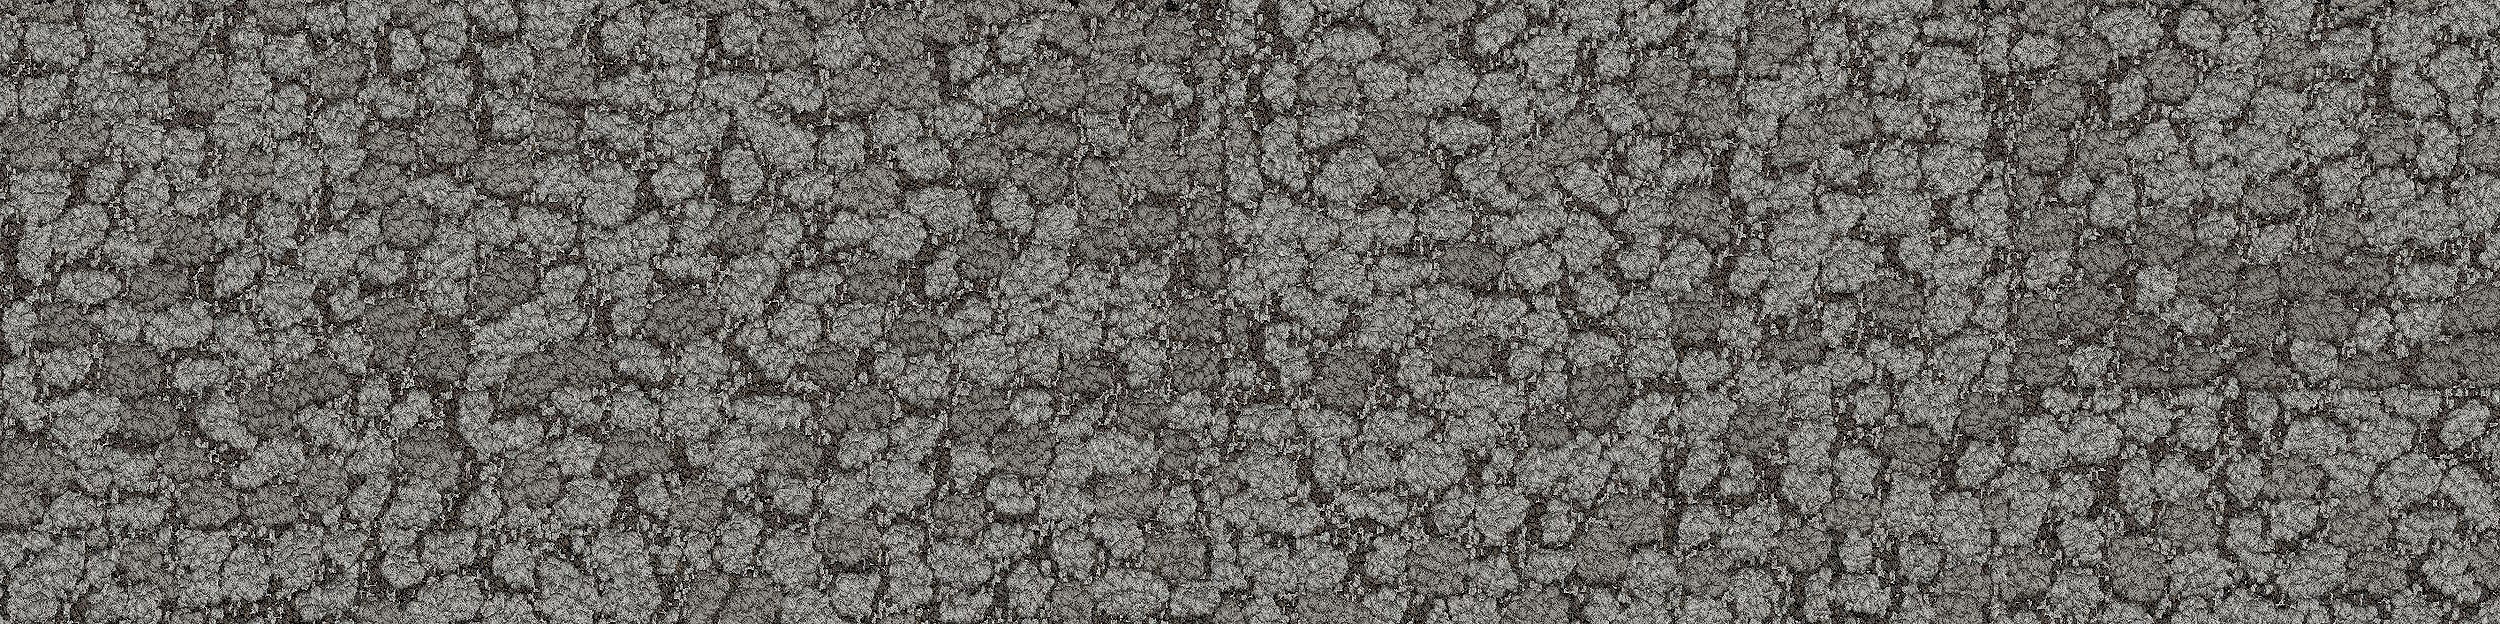 HN840 Carpet Tile In Nickel Bildnummer 13